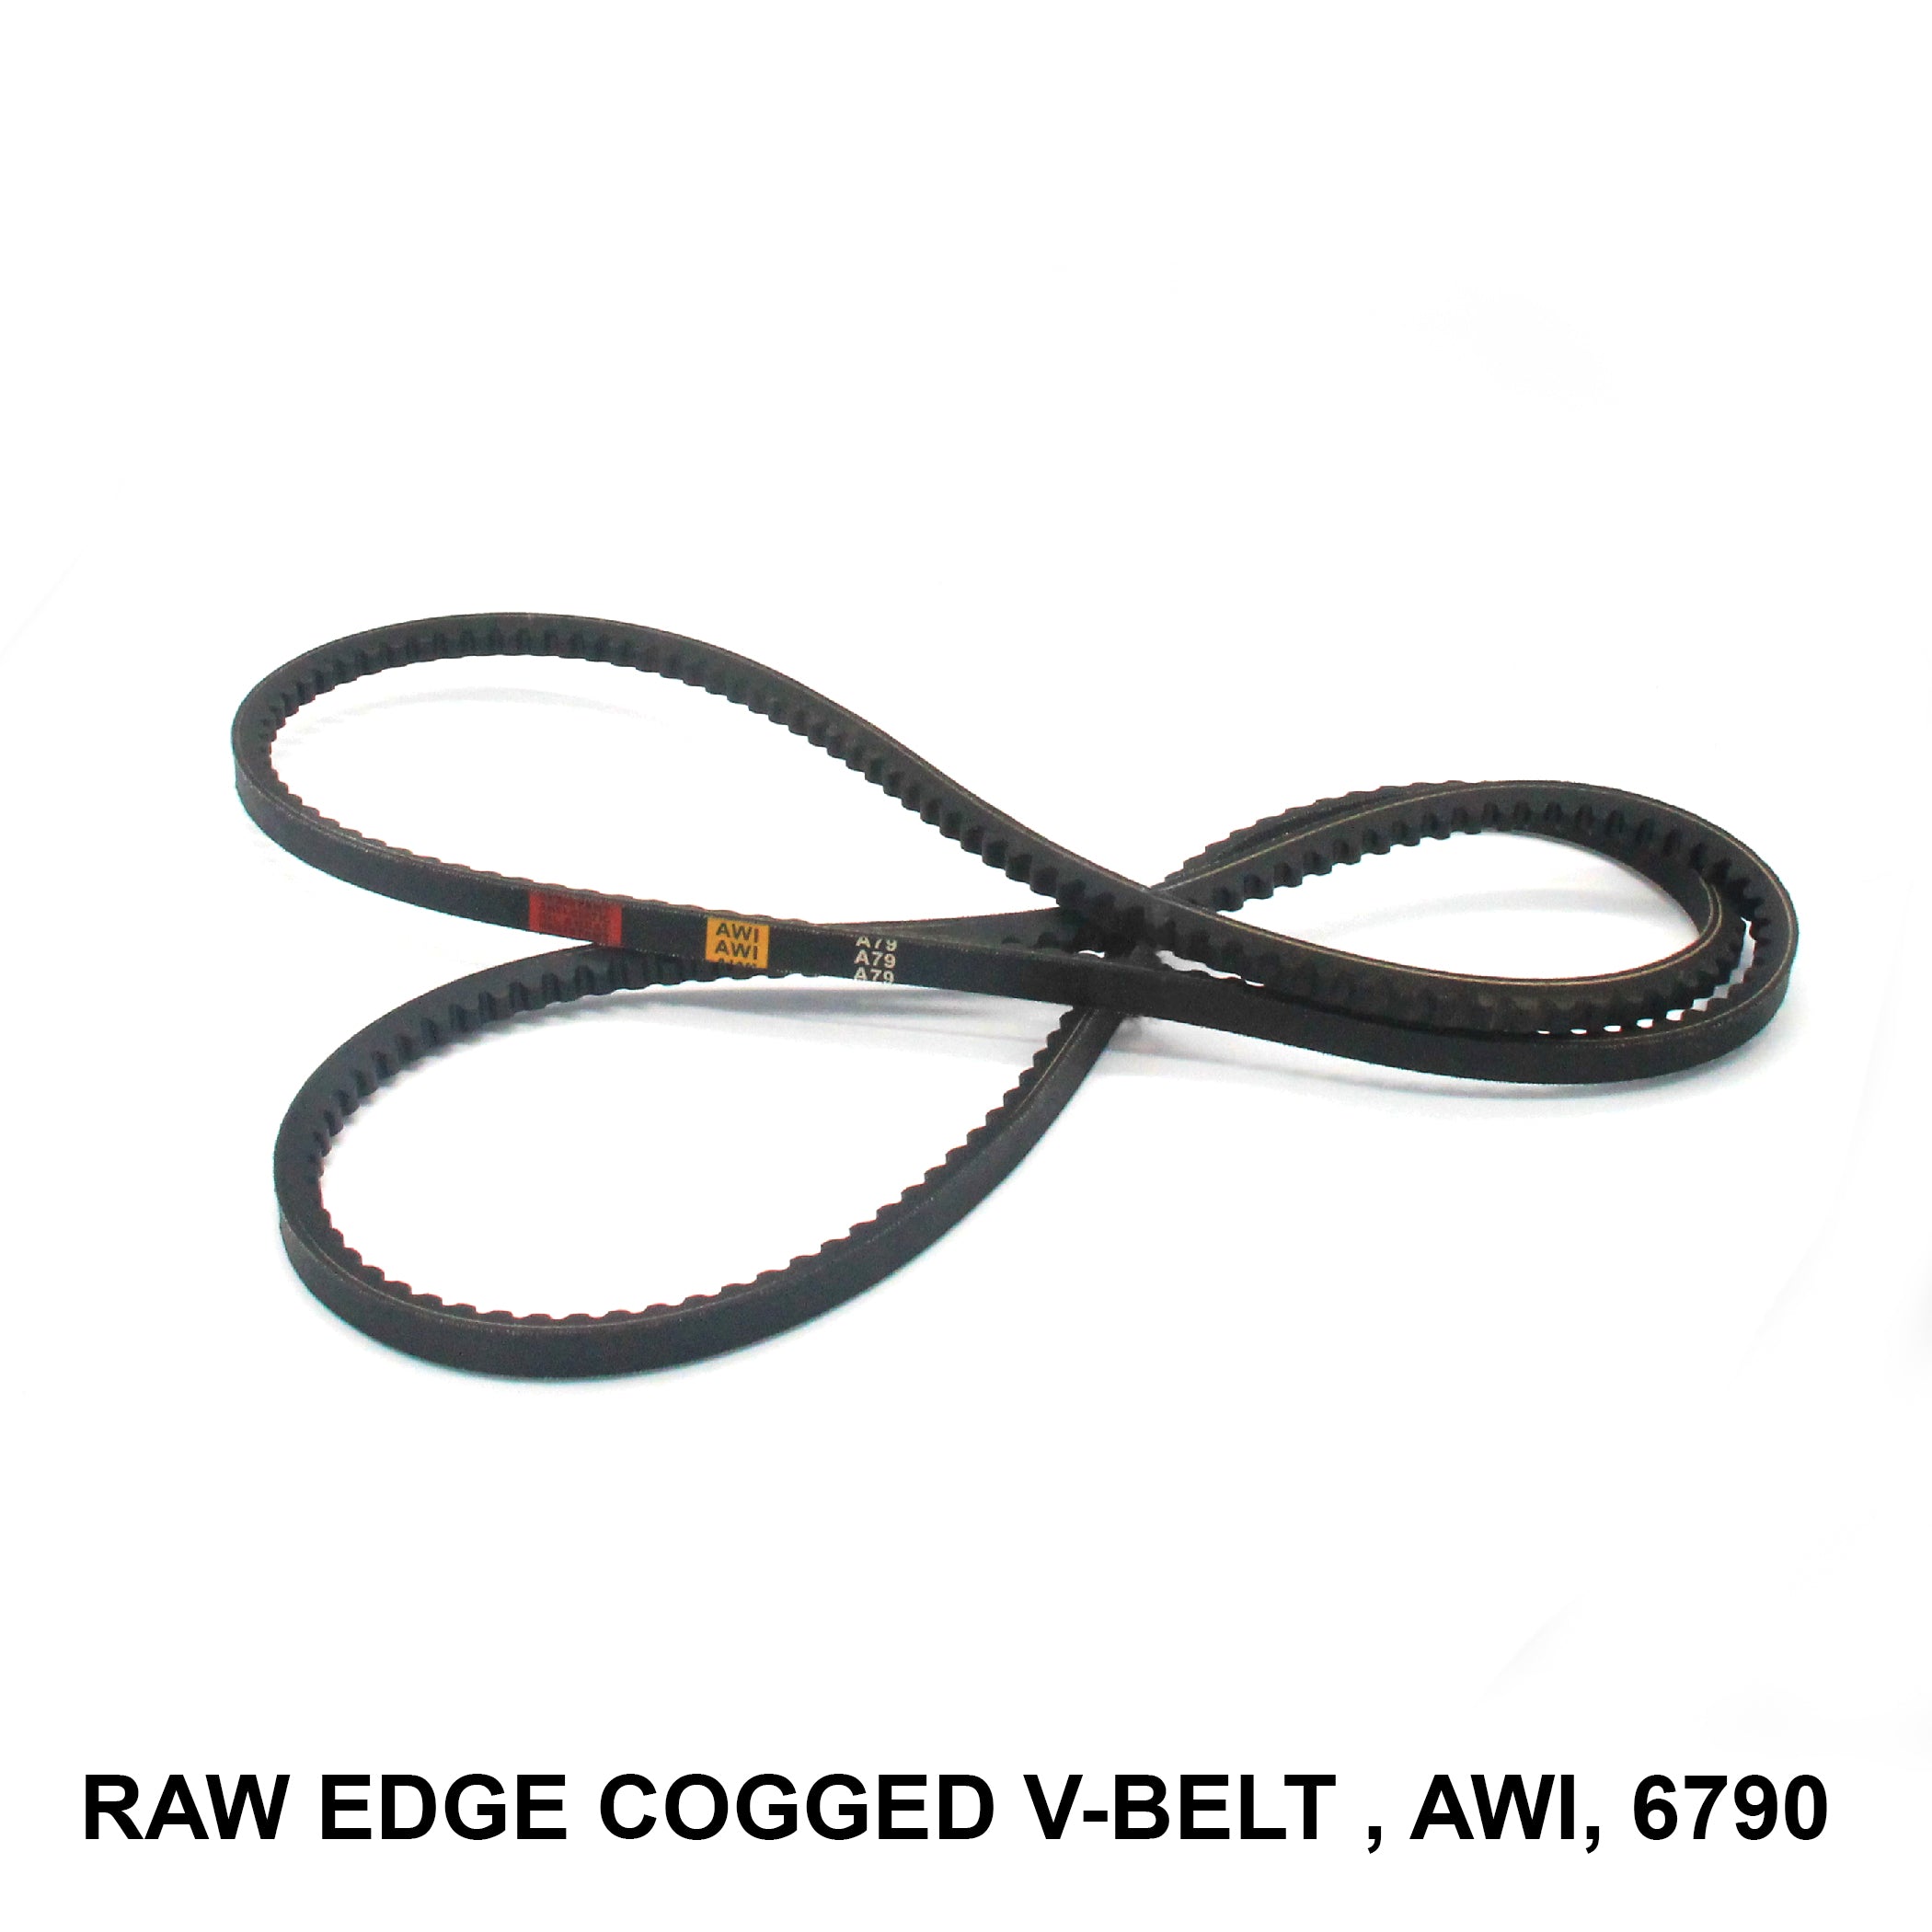 ကုန်ပစ္စည်းကုဒ် RECMF-6790 (006747) ပါသော AWI အတွက် Raw Edge Cogged V-belt